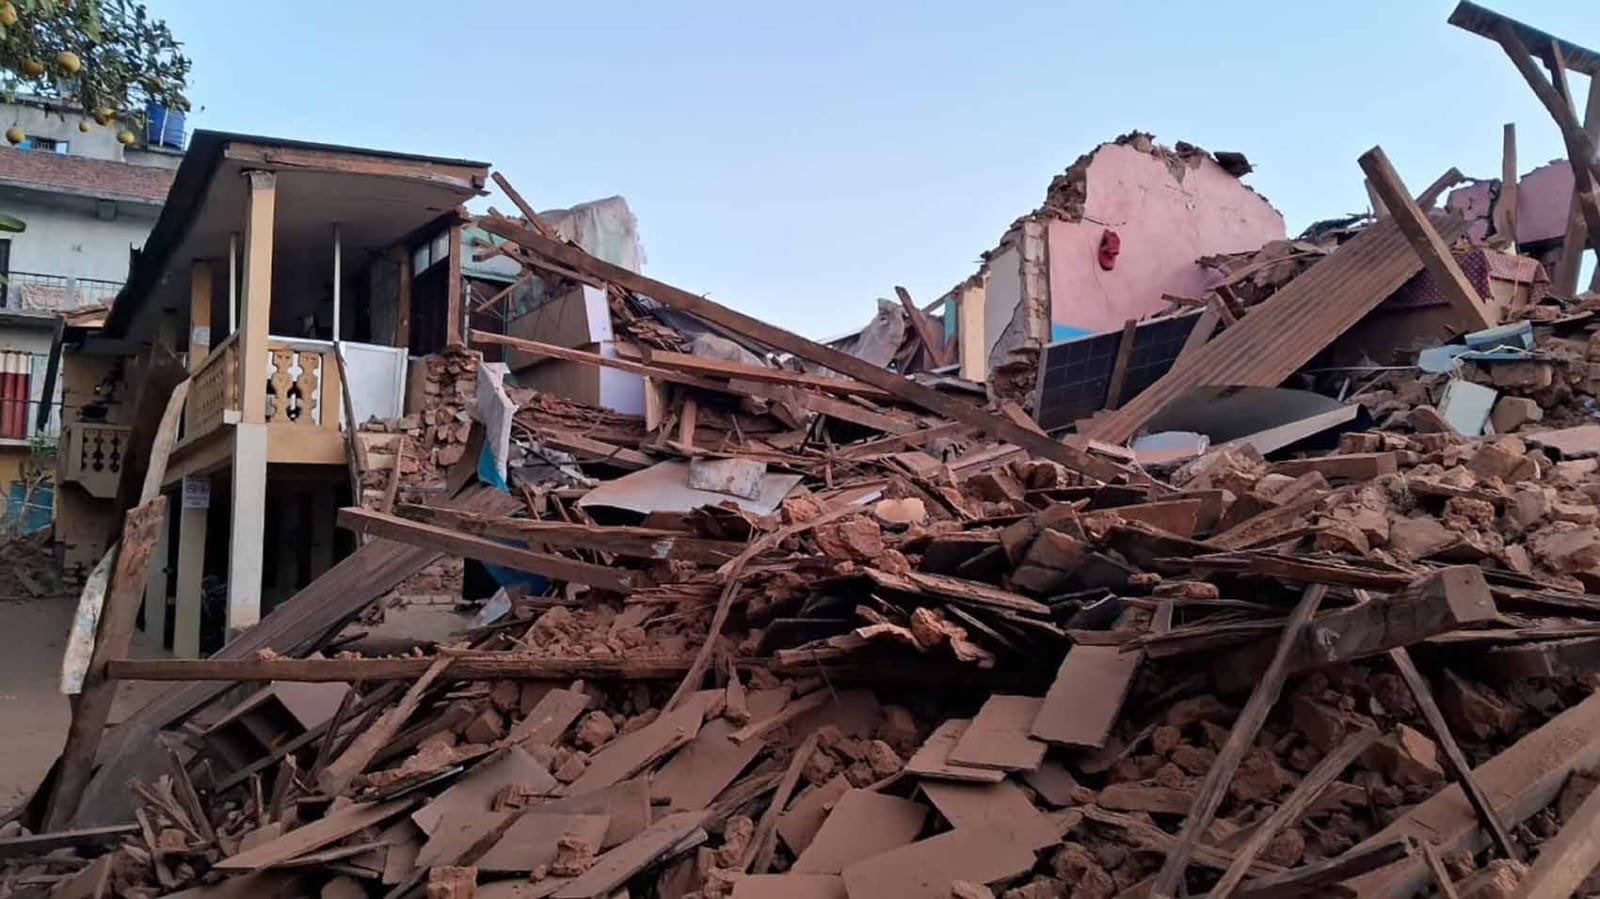 Trung tâm Địa chấn Quốc gia Nepal cho biết trận động đất có cường độ 6,4 độ richter, có tâm chấn ở Jajarkot, một huyện đồi núi có dân số khoảng 190.000 người và nhiều ngôi làng nằm rải rác trên những ngọn đồi hẻo lánh. Hiện dù rất cố gắng nhưng các lực lượng cứu hộ vẫn chưa thể tiếp cận khu vực.